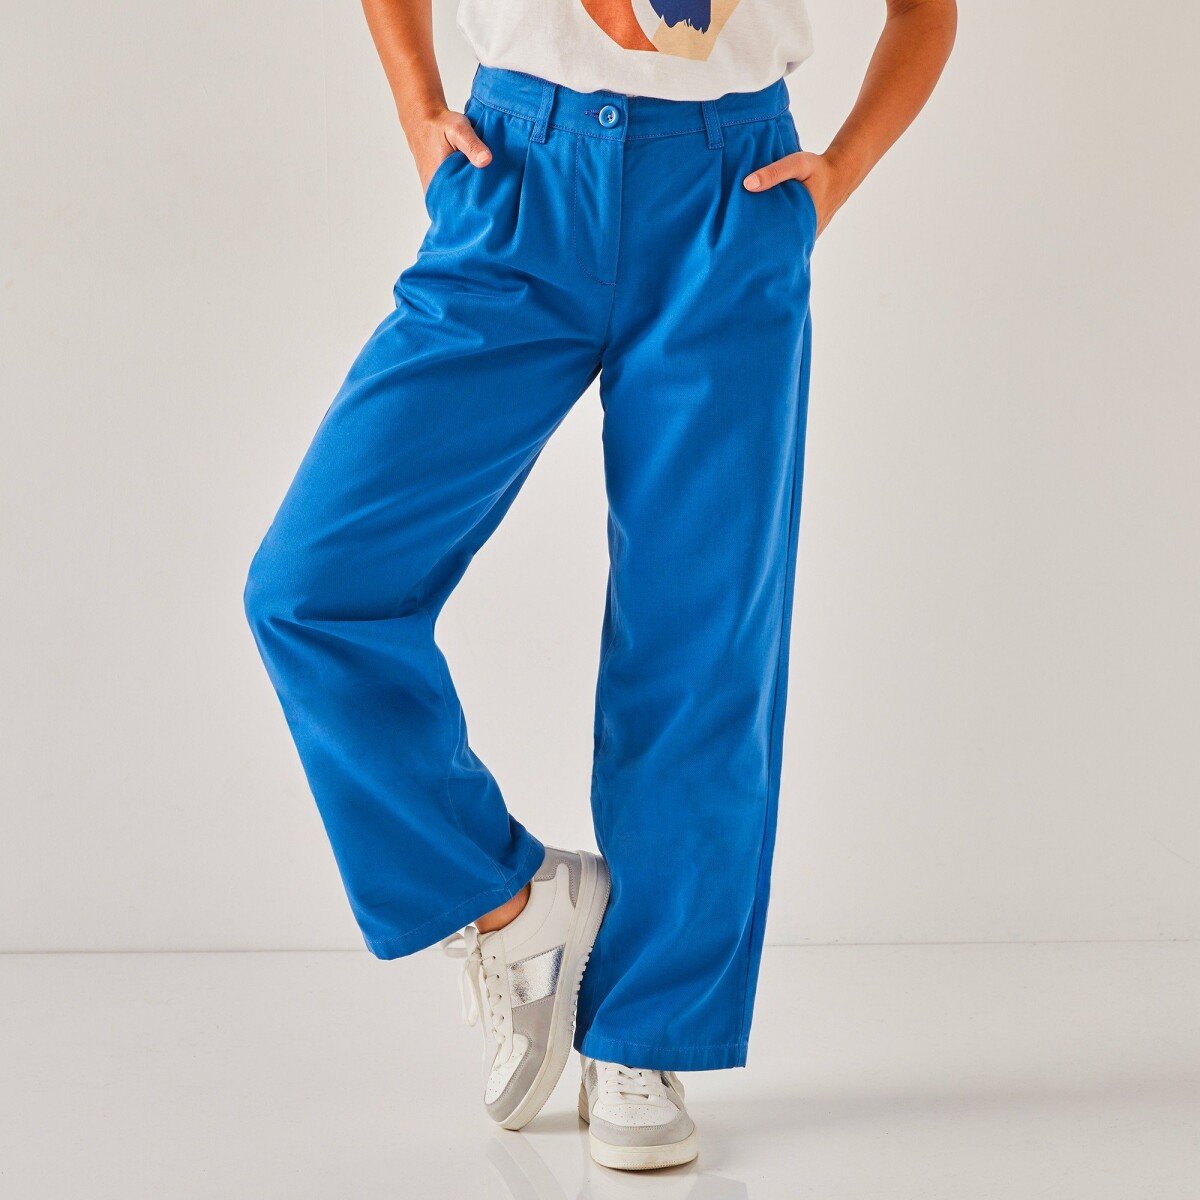 Blancheporte Rovné široké kalhoty pro malou postavu tmavě modrá 36